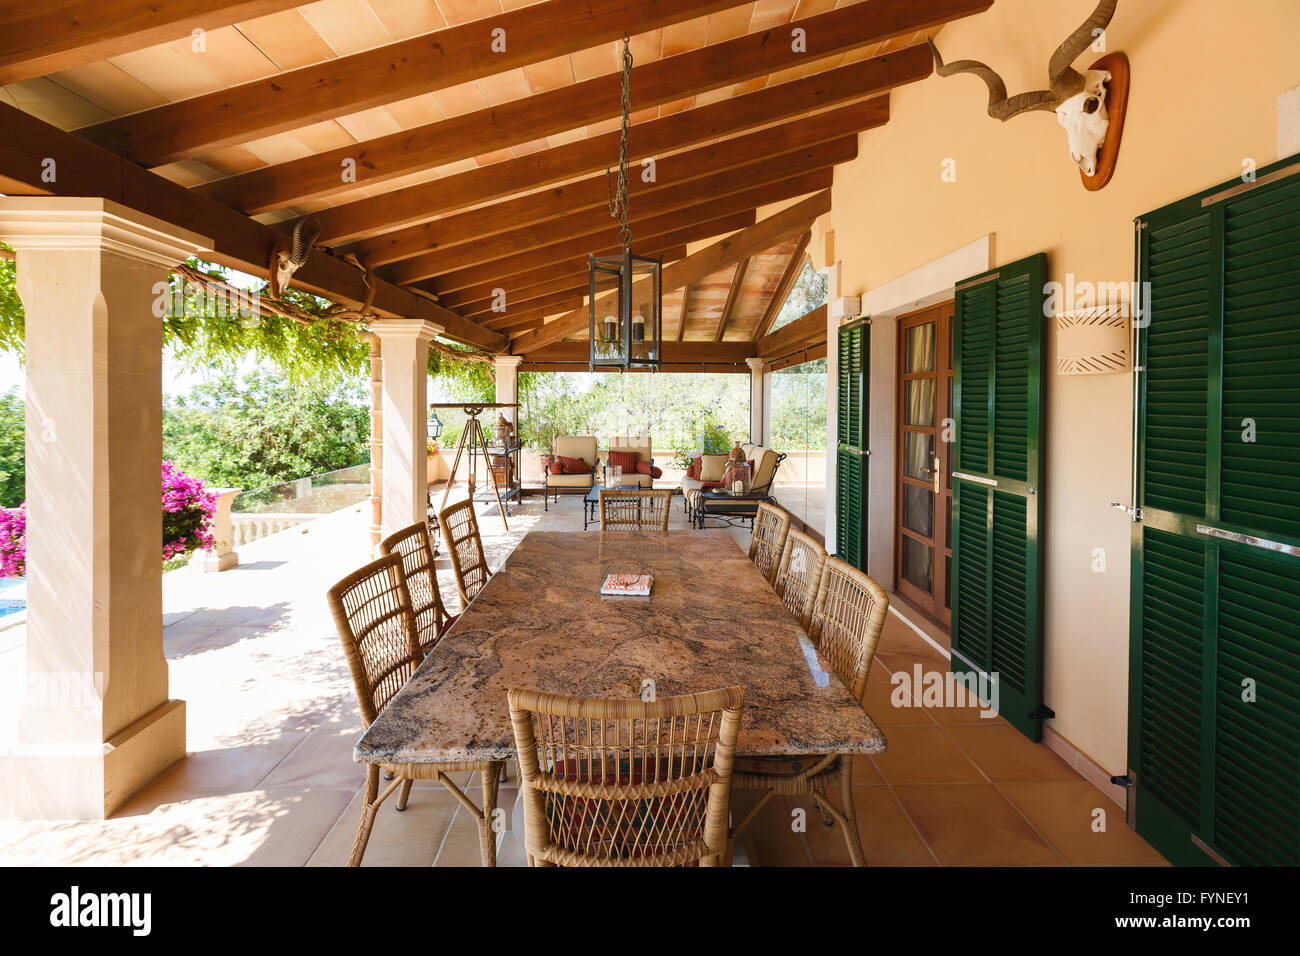 The veranda of the Spanish home nearby the Mediterranean Sea, Mallorca Stock Photo